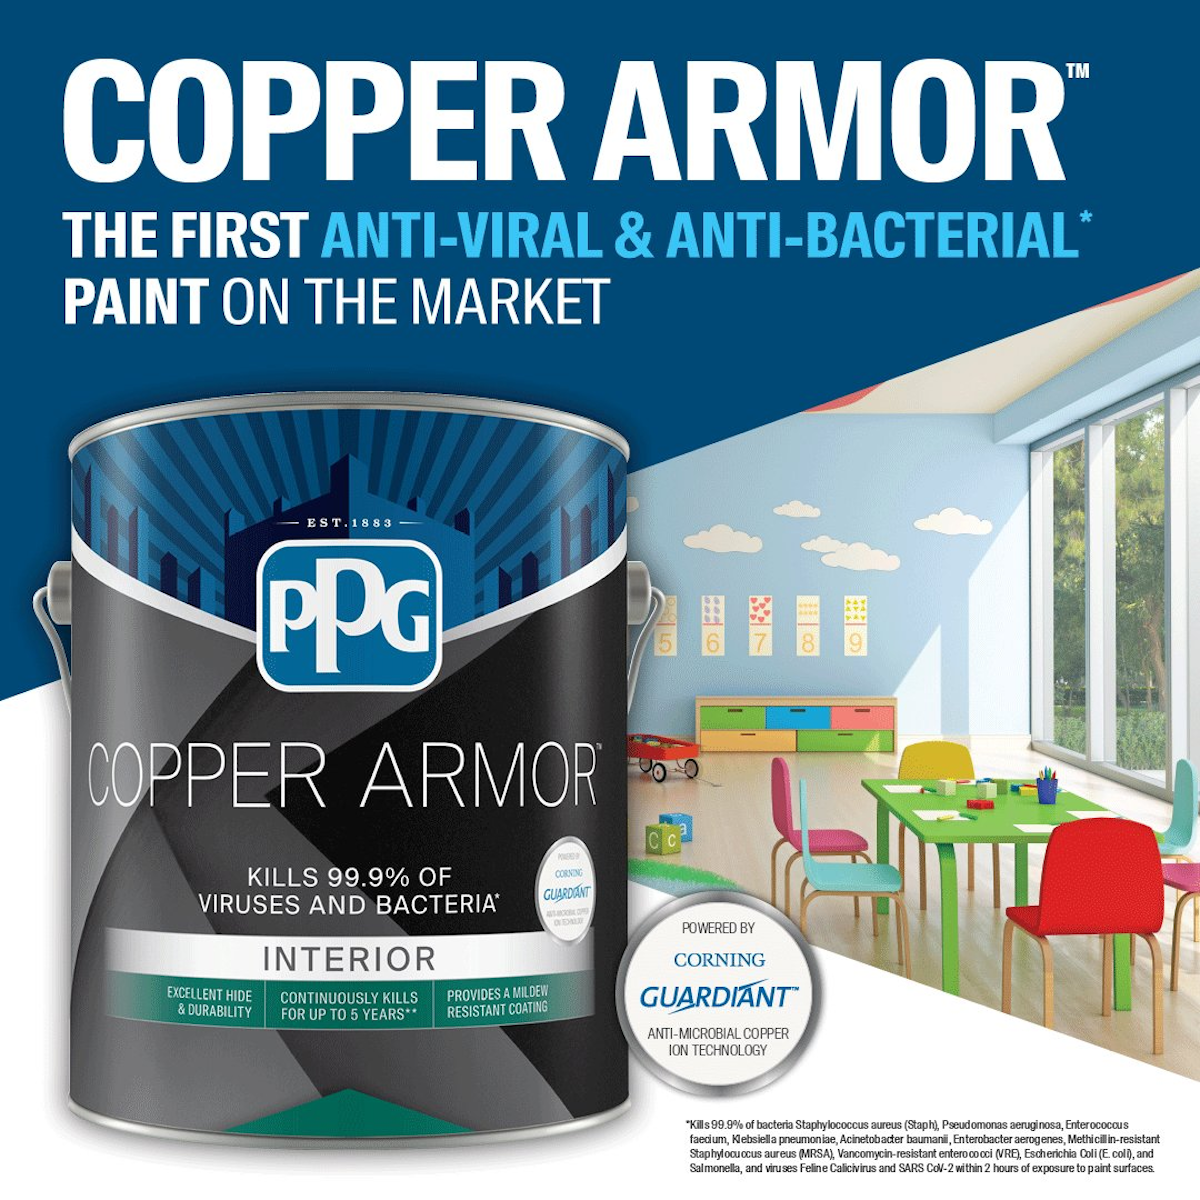 PPG Copper Armor paint